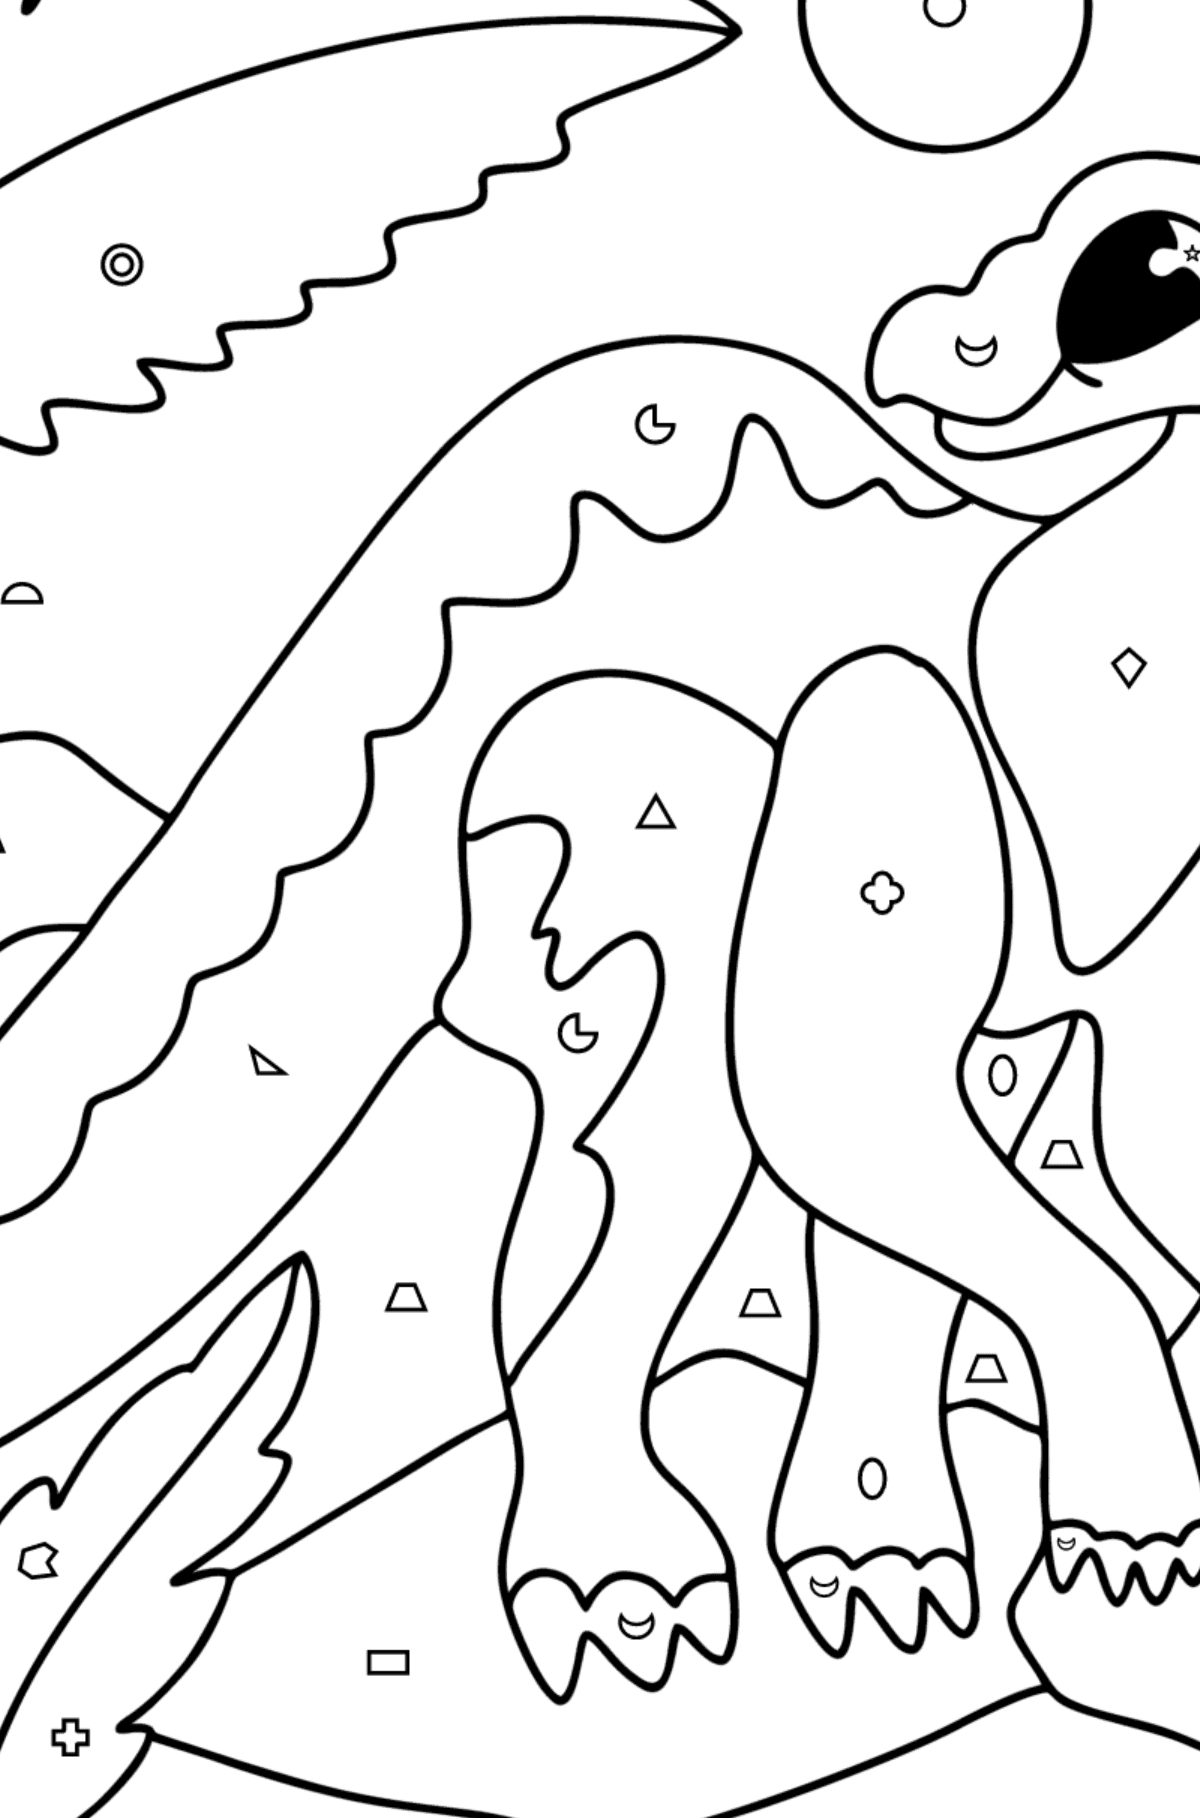 Dibujo de Iguanodonte para colorear - Colorear por Formas Geométricas para Niños